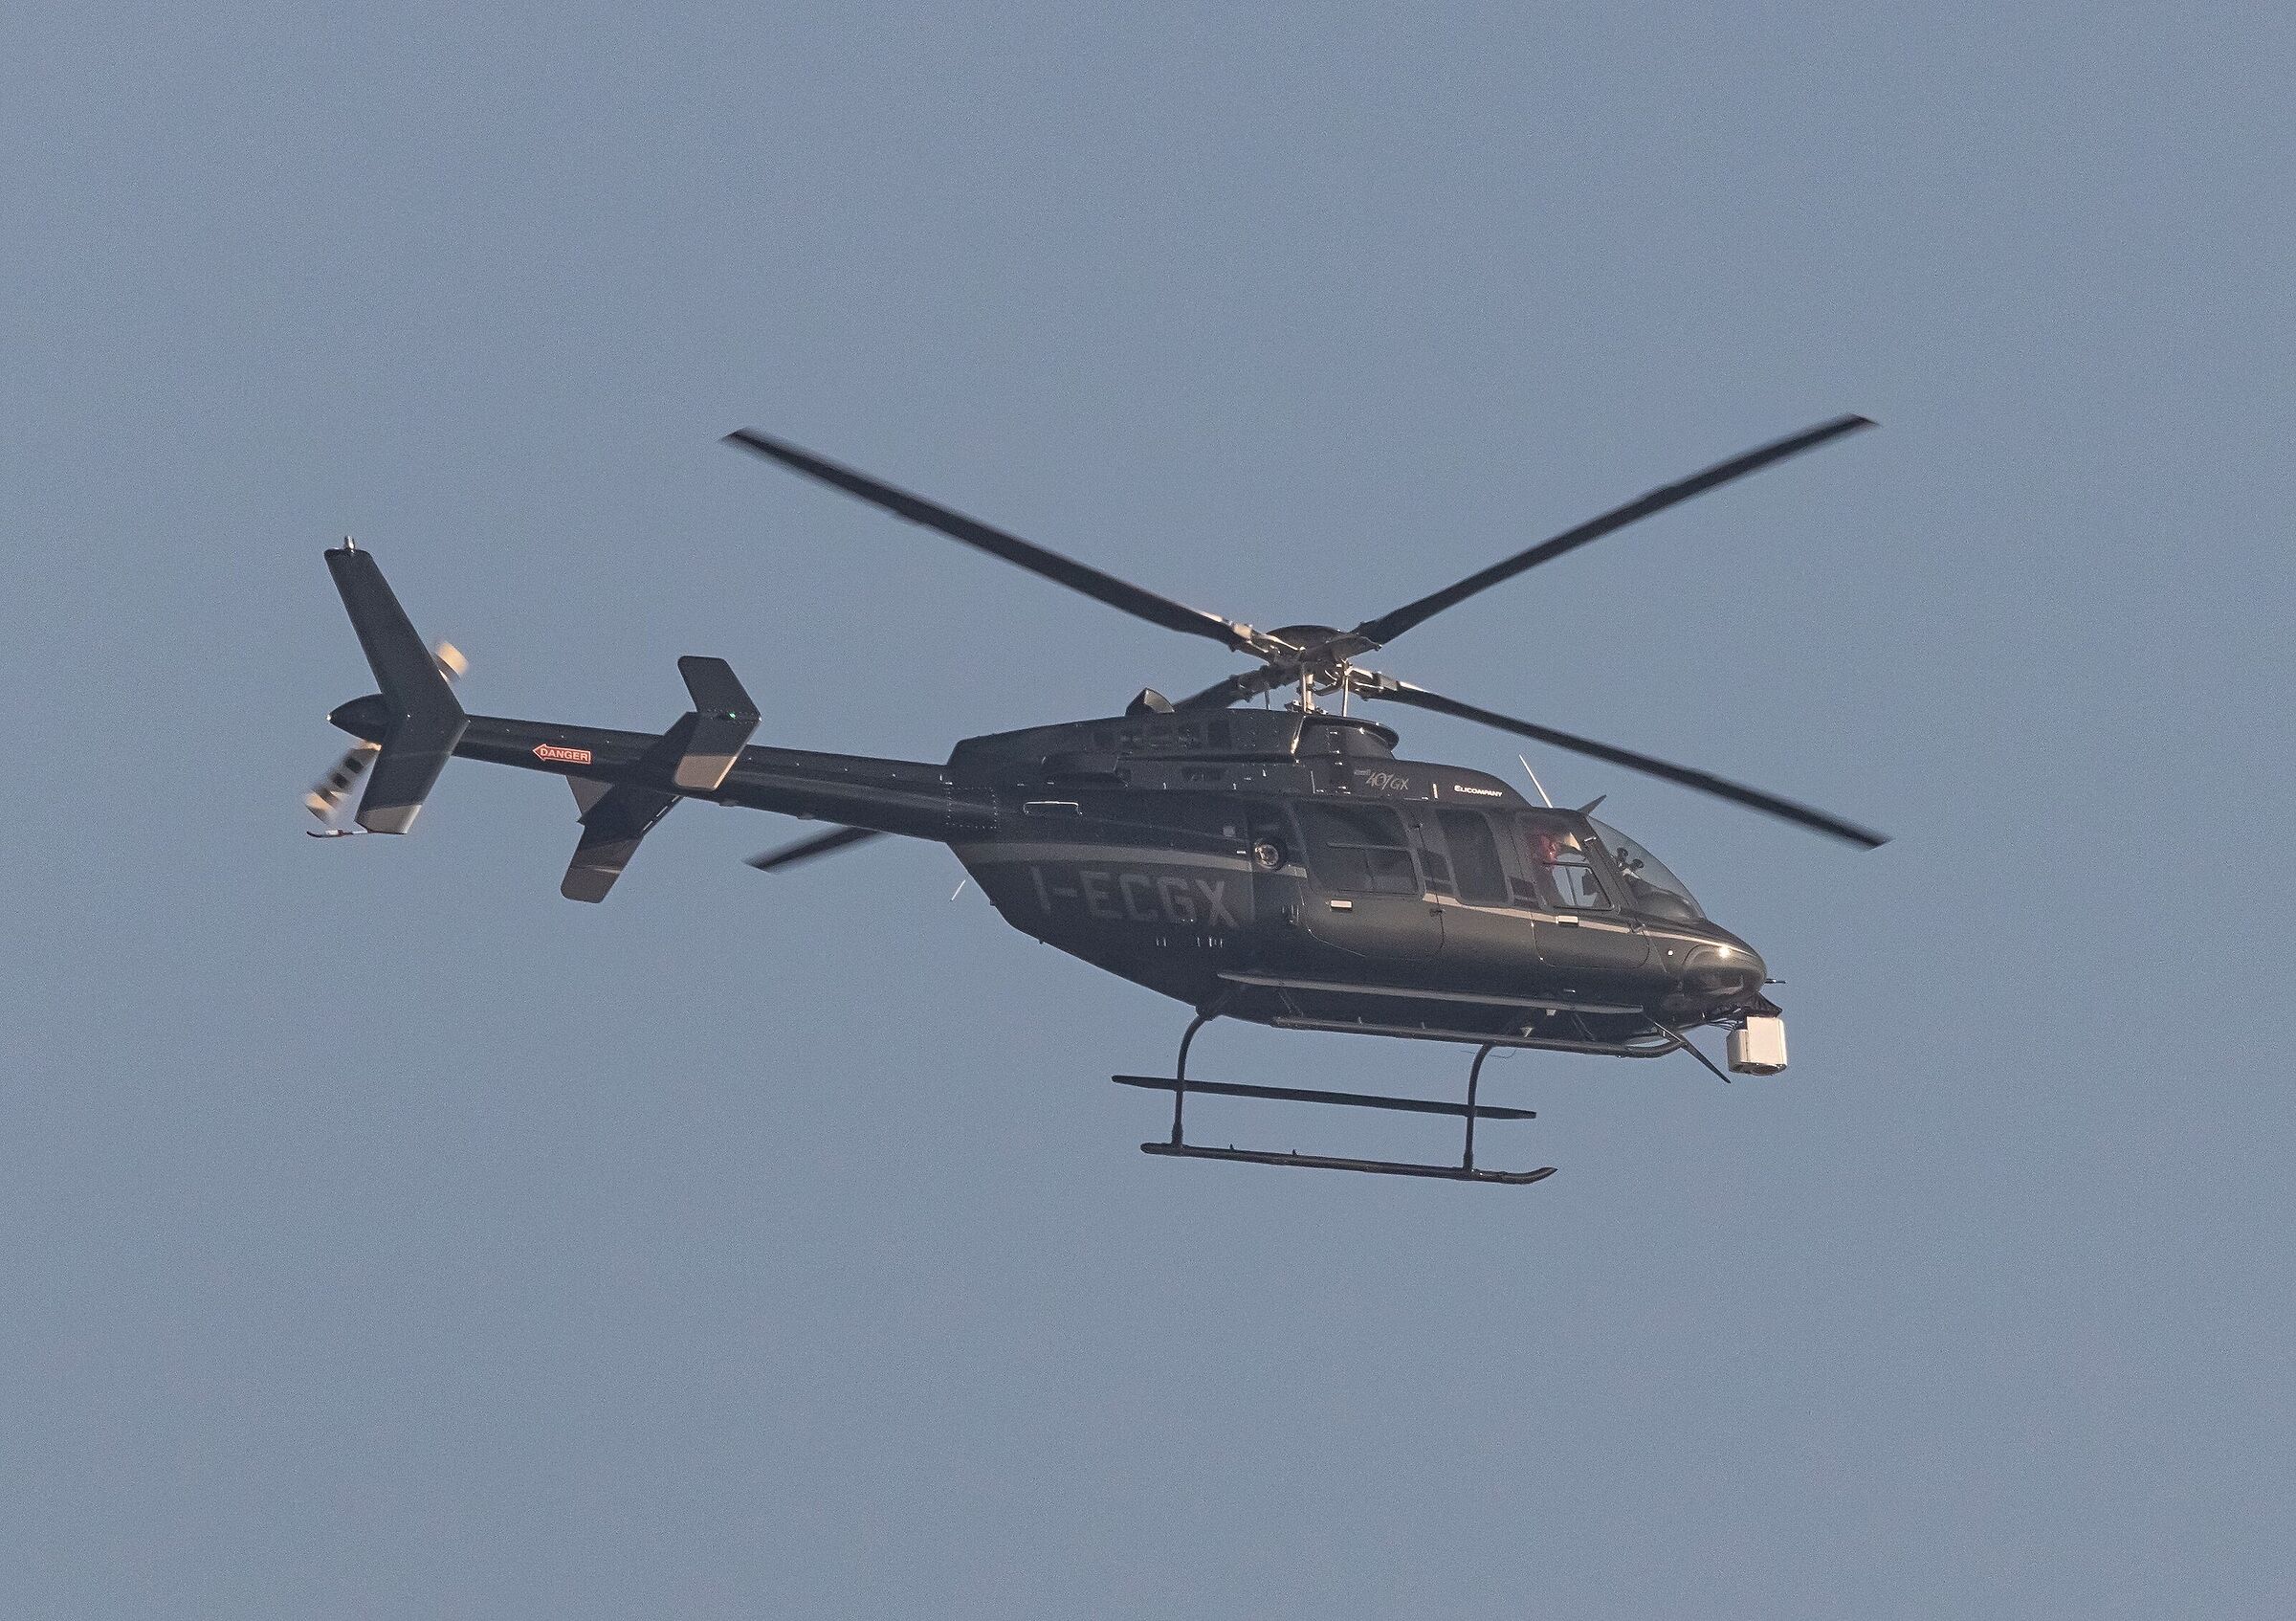 elicottero bell 407gx i-ecgx elicompany 26/11/2020...